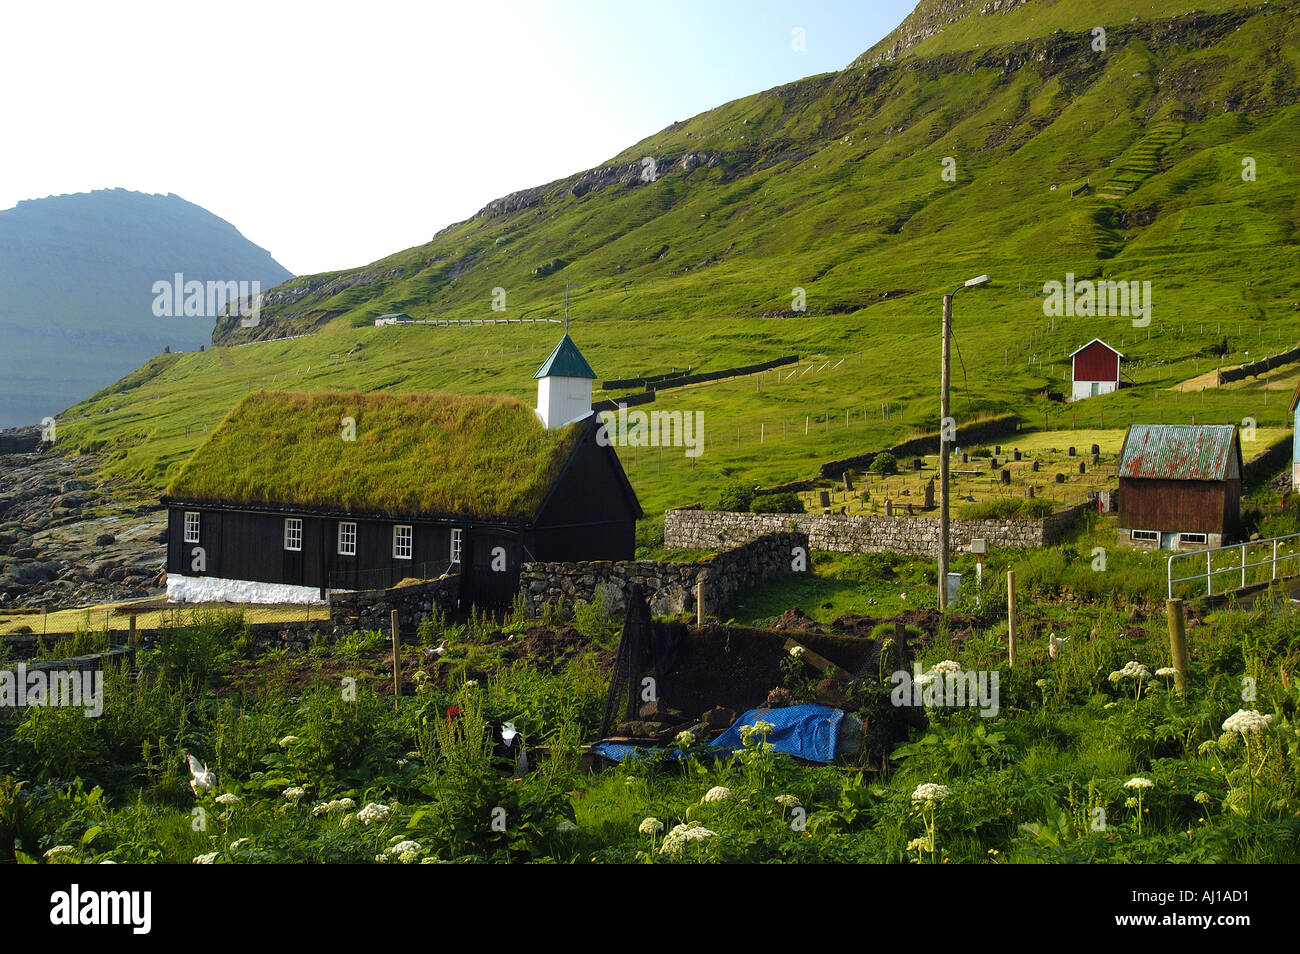 La chiesa con il tetto di erba nel villaggio funningur isole Faer Øer Foto Stock